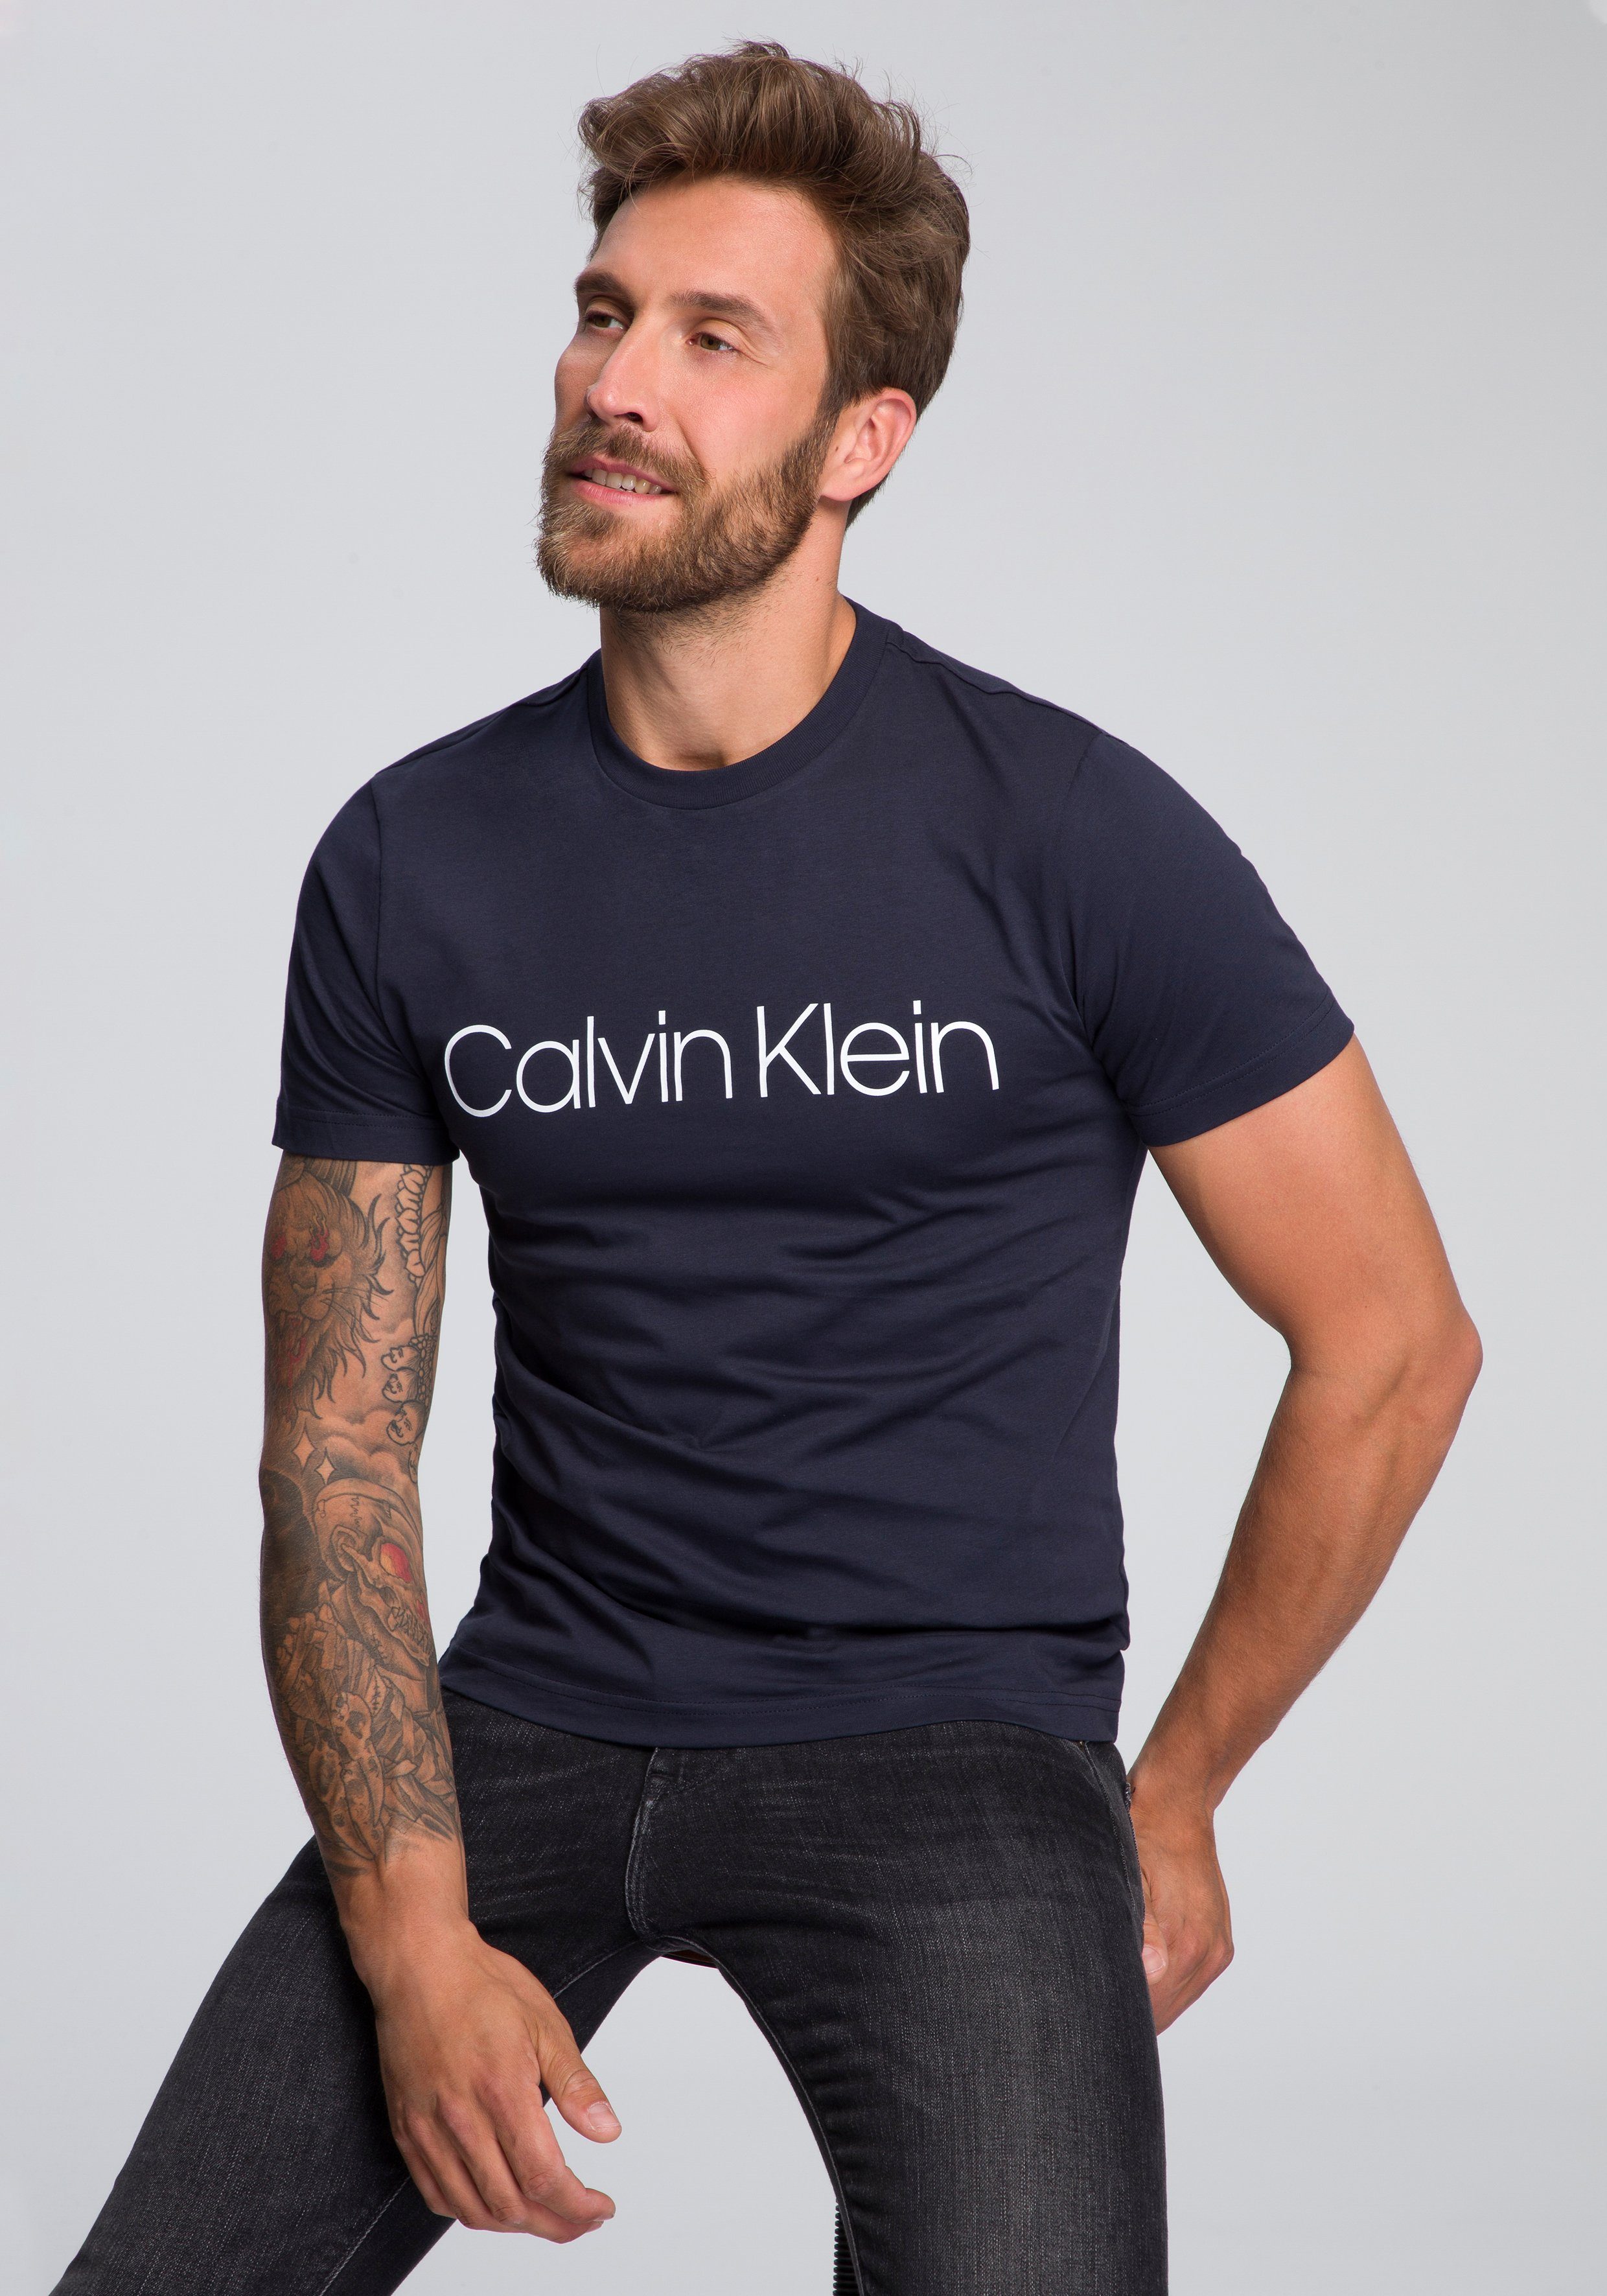 Calvin Klein SALE & Outlet » günstig & reduziert | OTTO